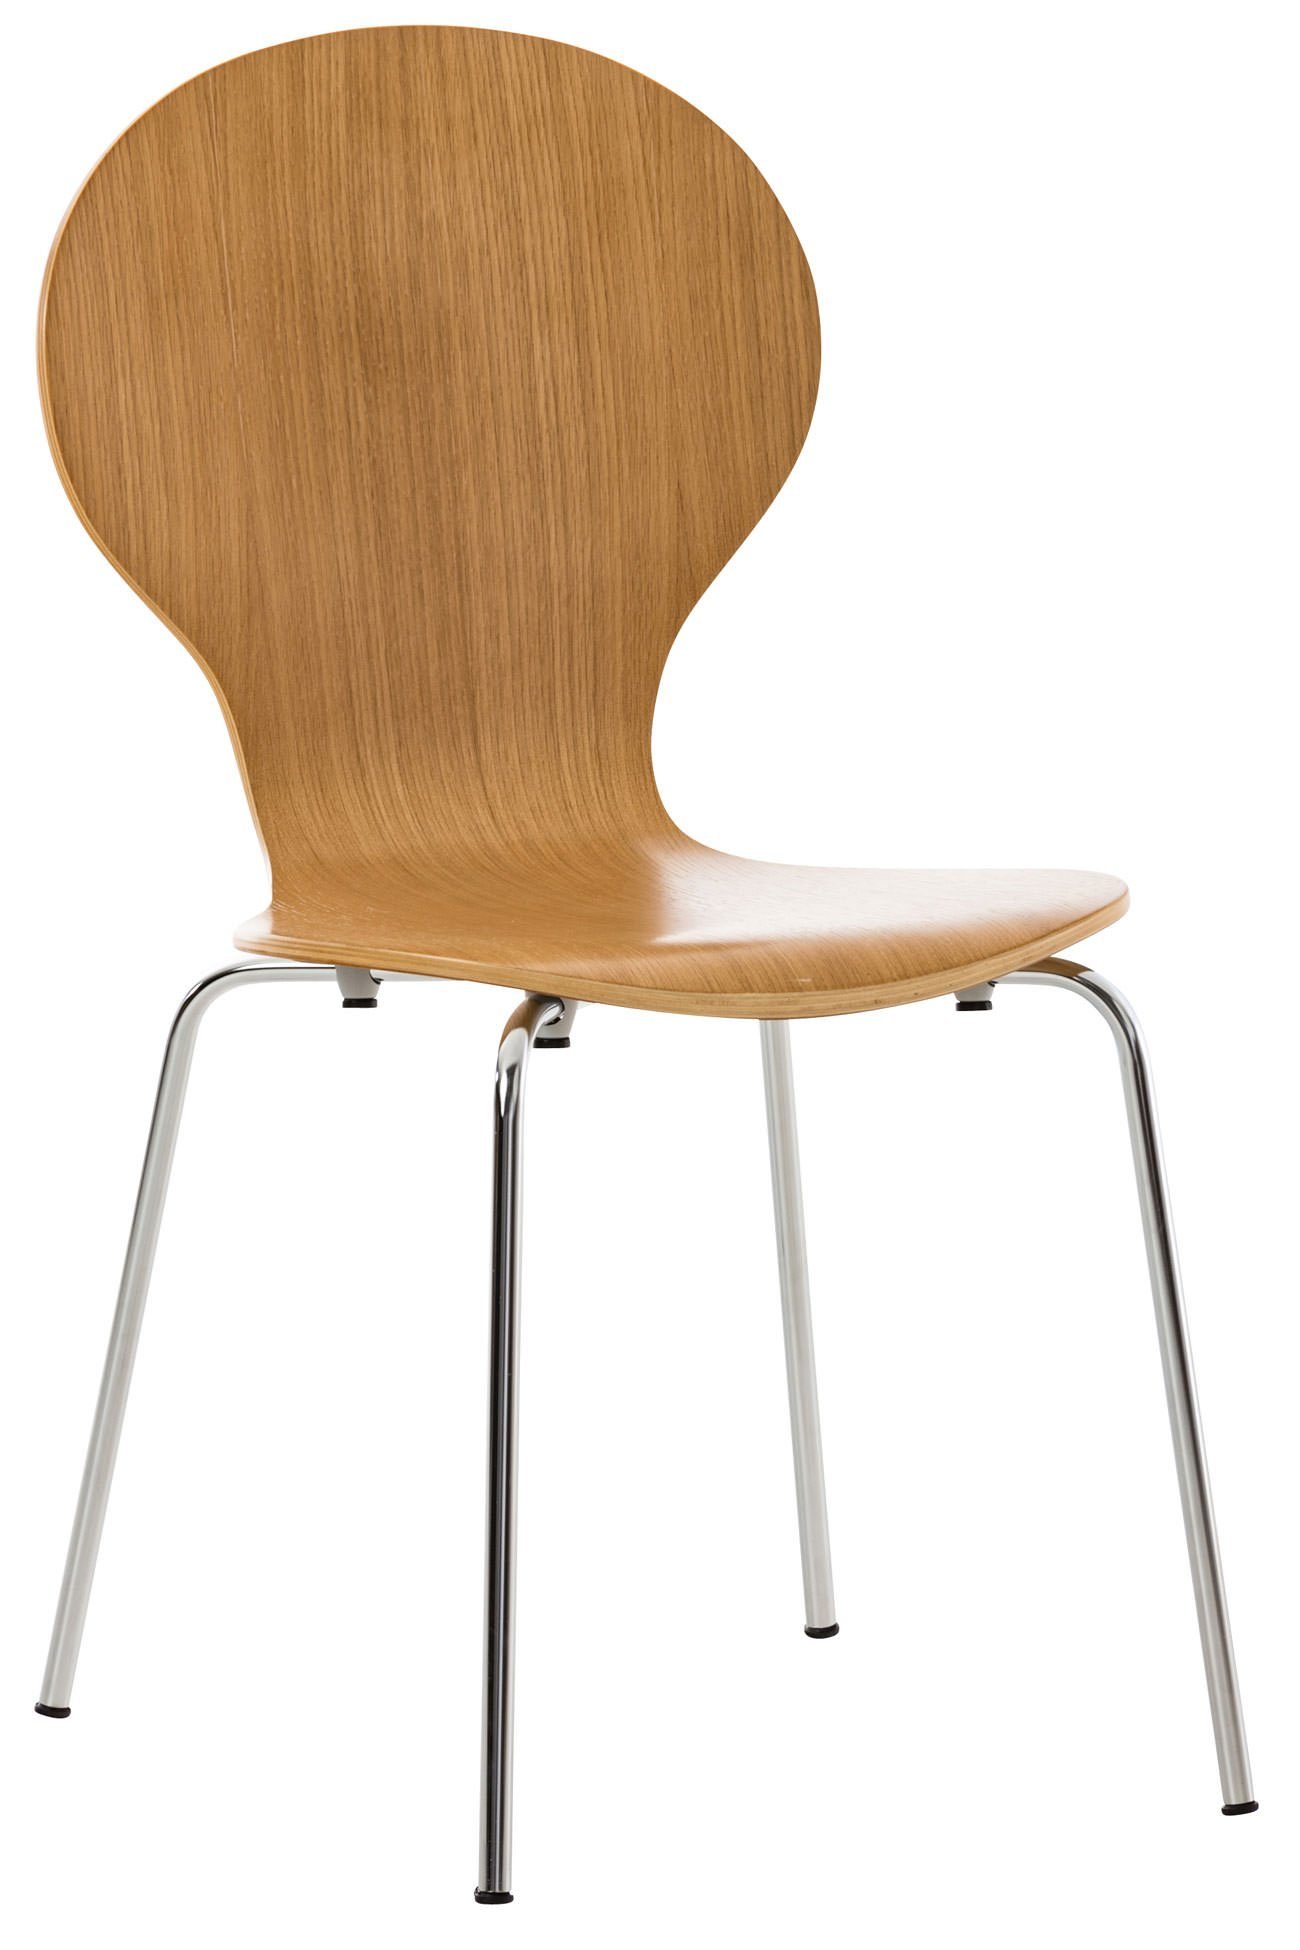 TPFLiving Besucherstuhl Daggy mit ergonomisch geformter Sitzfläche - Konferenzstuhl (Besprechungsstuhl - Warteraumstuhl - Messestuhl), Gestell: Metall chrom - Sitzfläche: Holz eiche